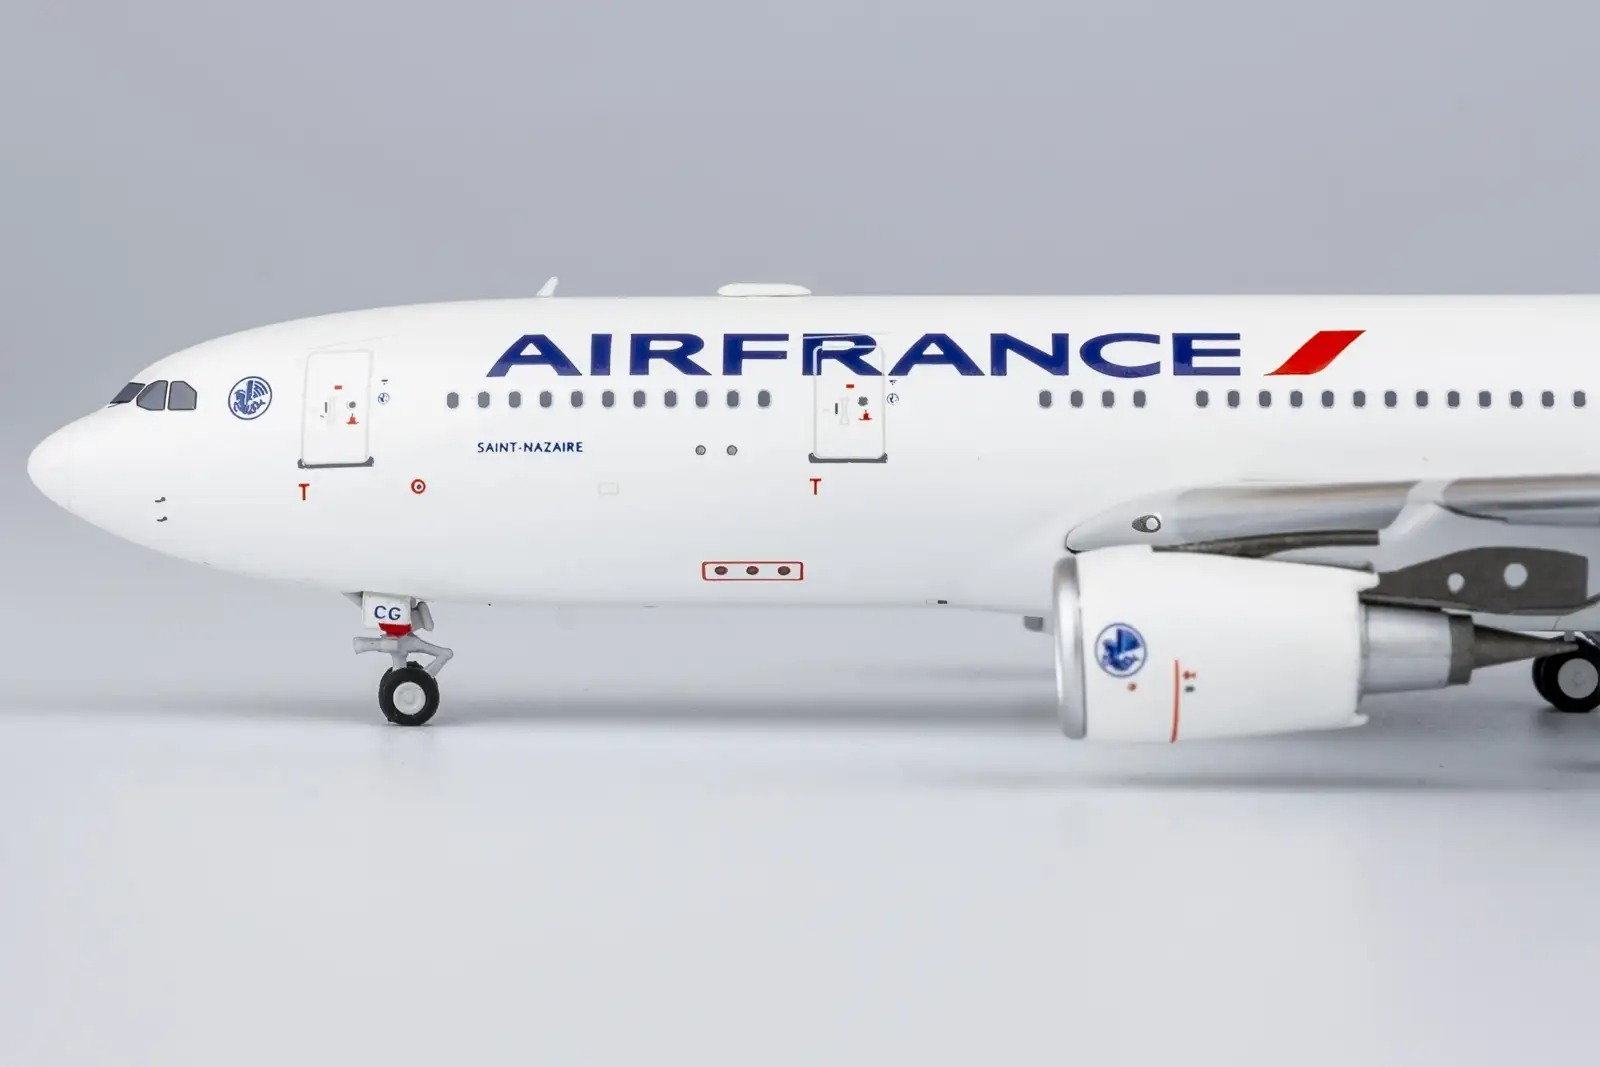 Maquette métal Airbus A330-200 Air France Saint-Nazaire F-GZCG 1/400 Métal